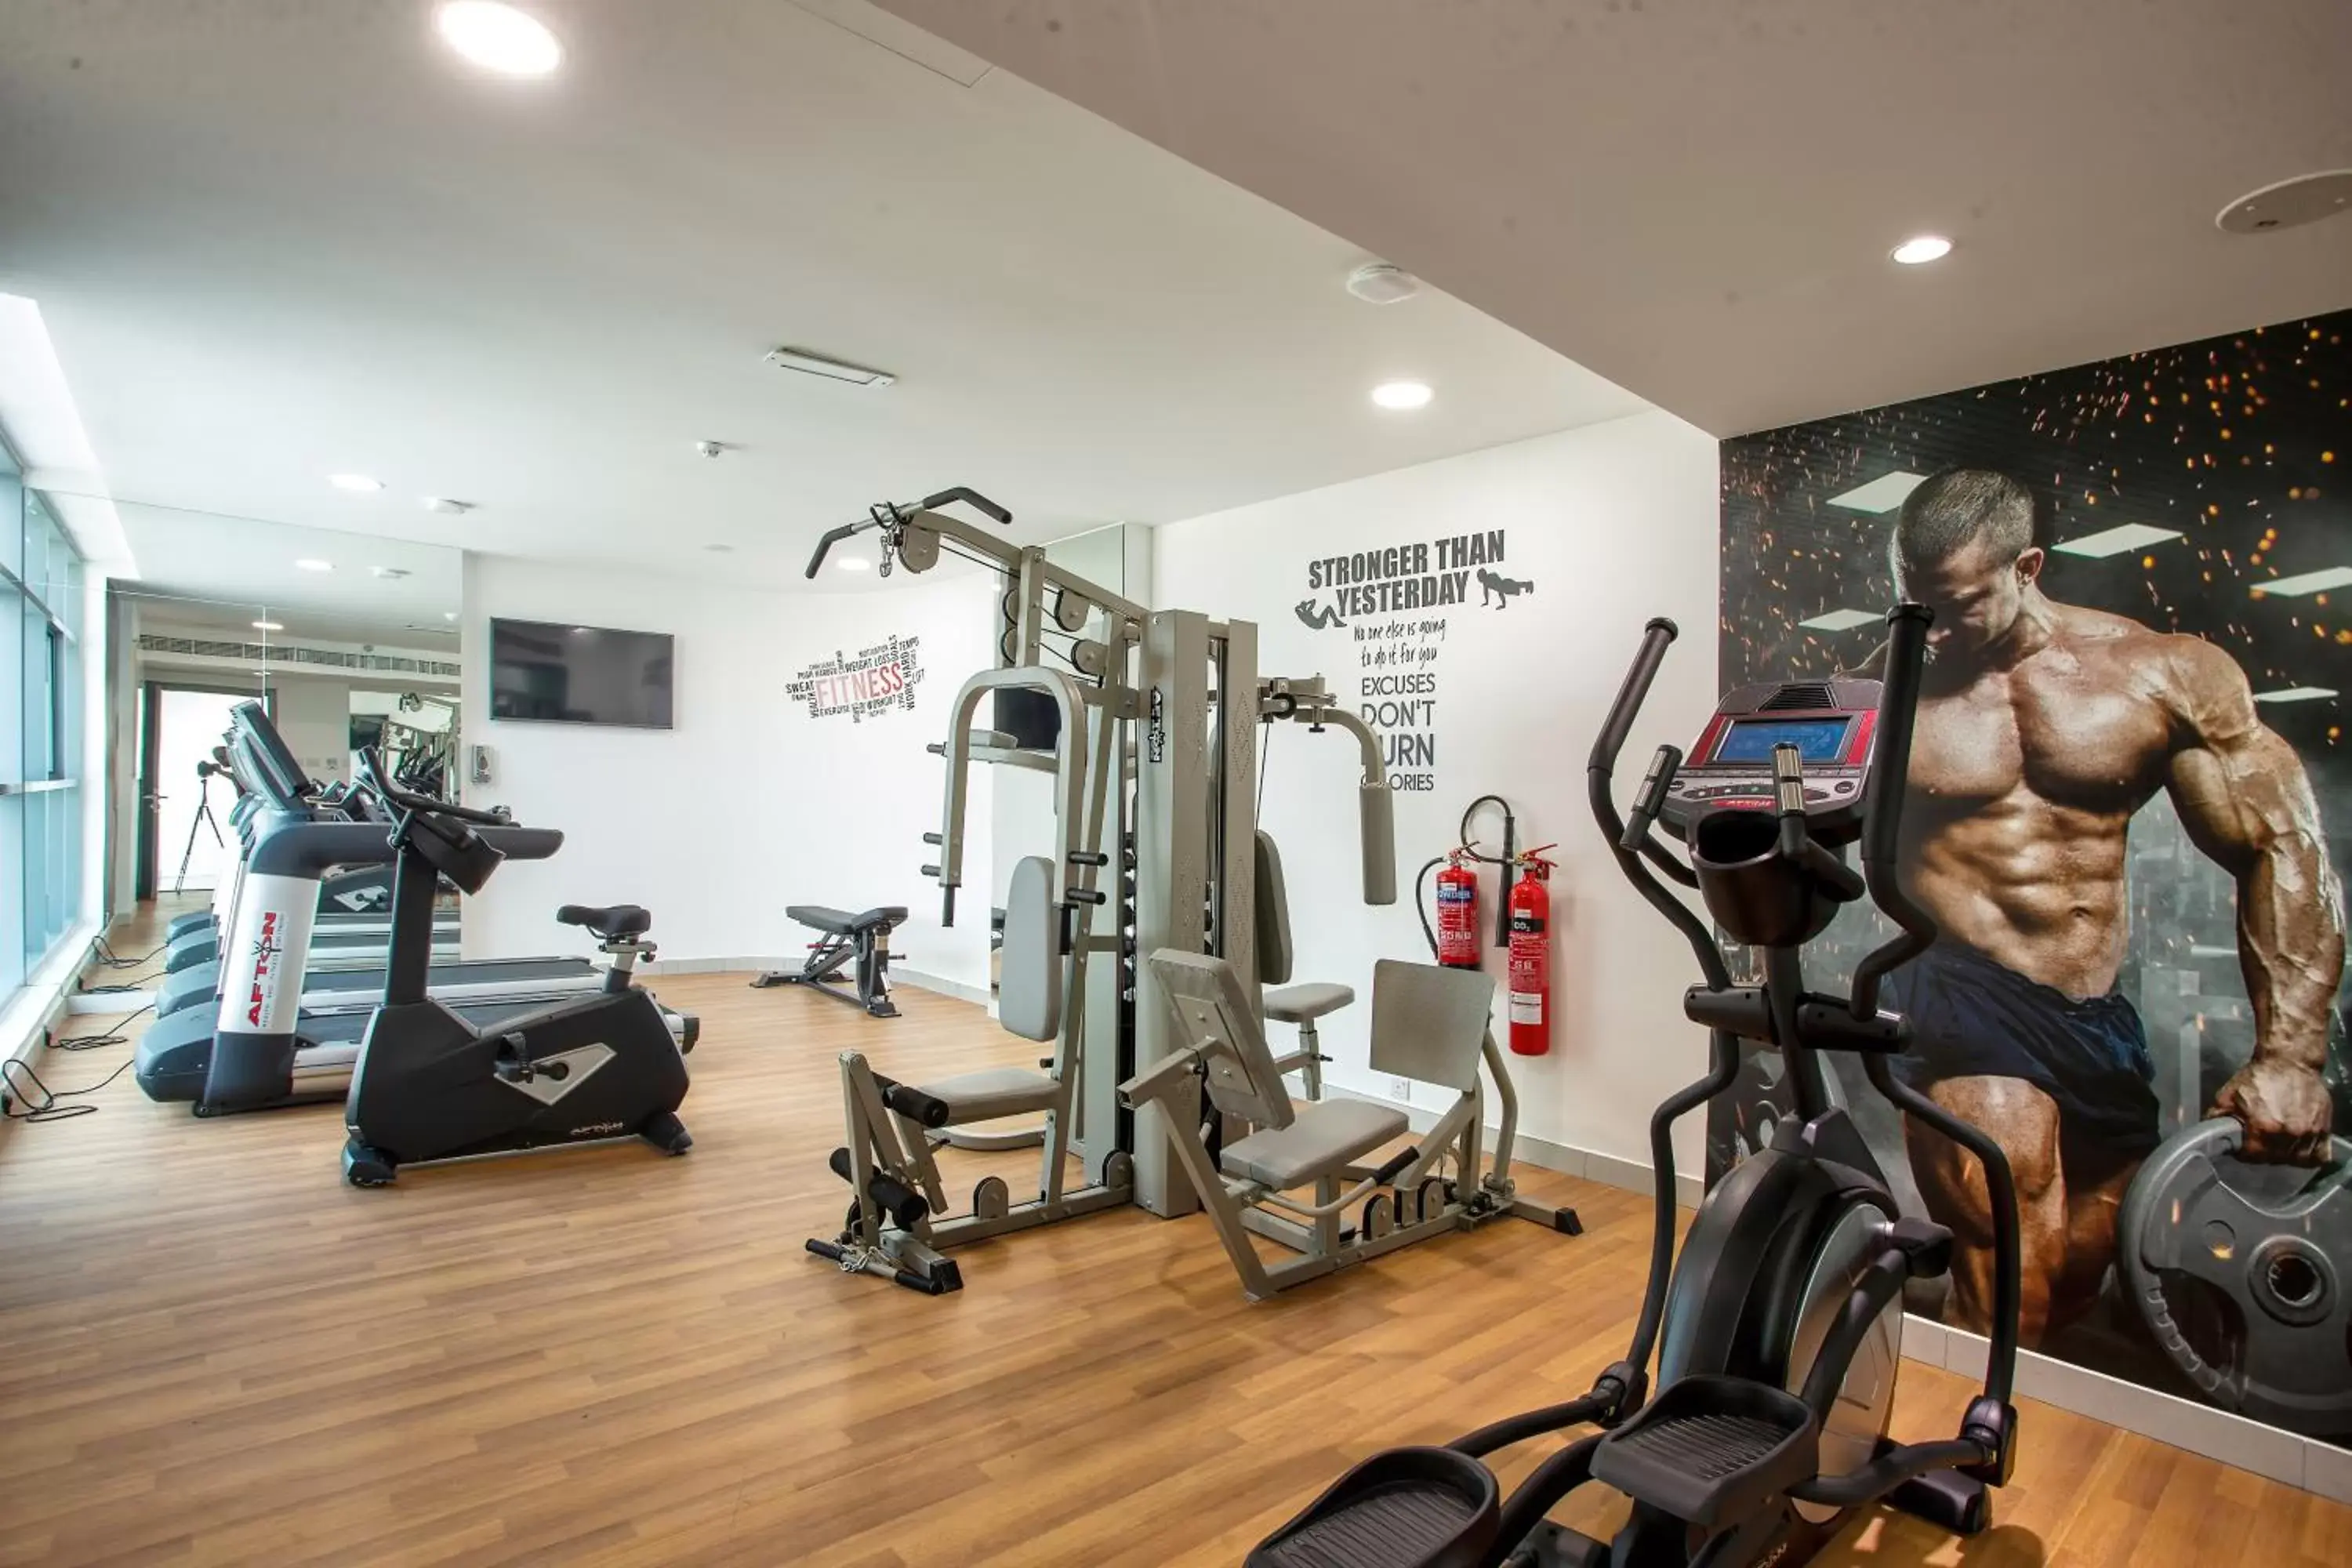 Fitness centre/facilities, Fitness Center/Facilities in City Avenue Al Reqqa Hotel